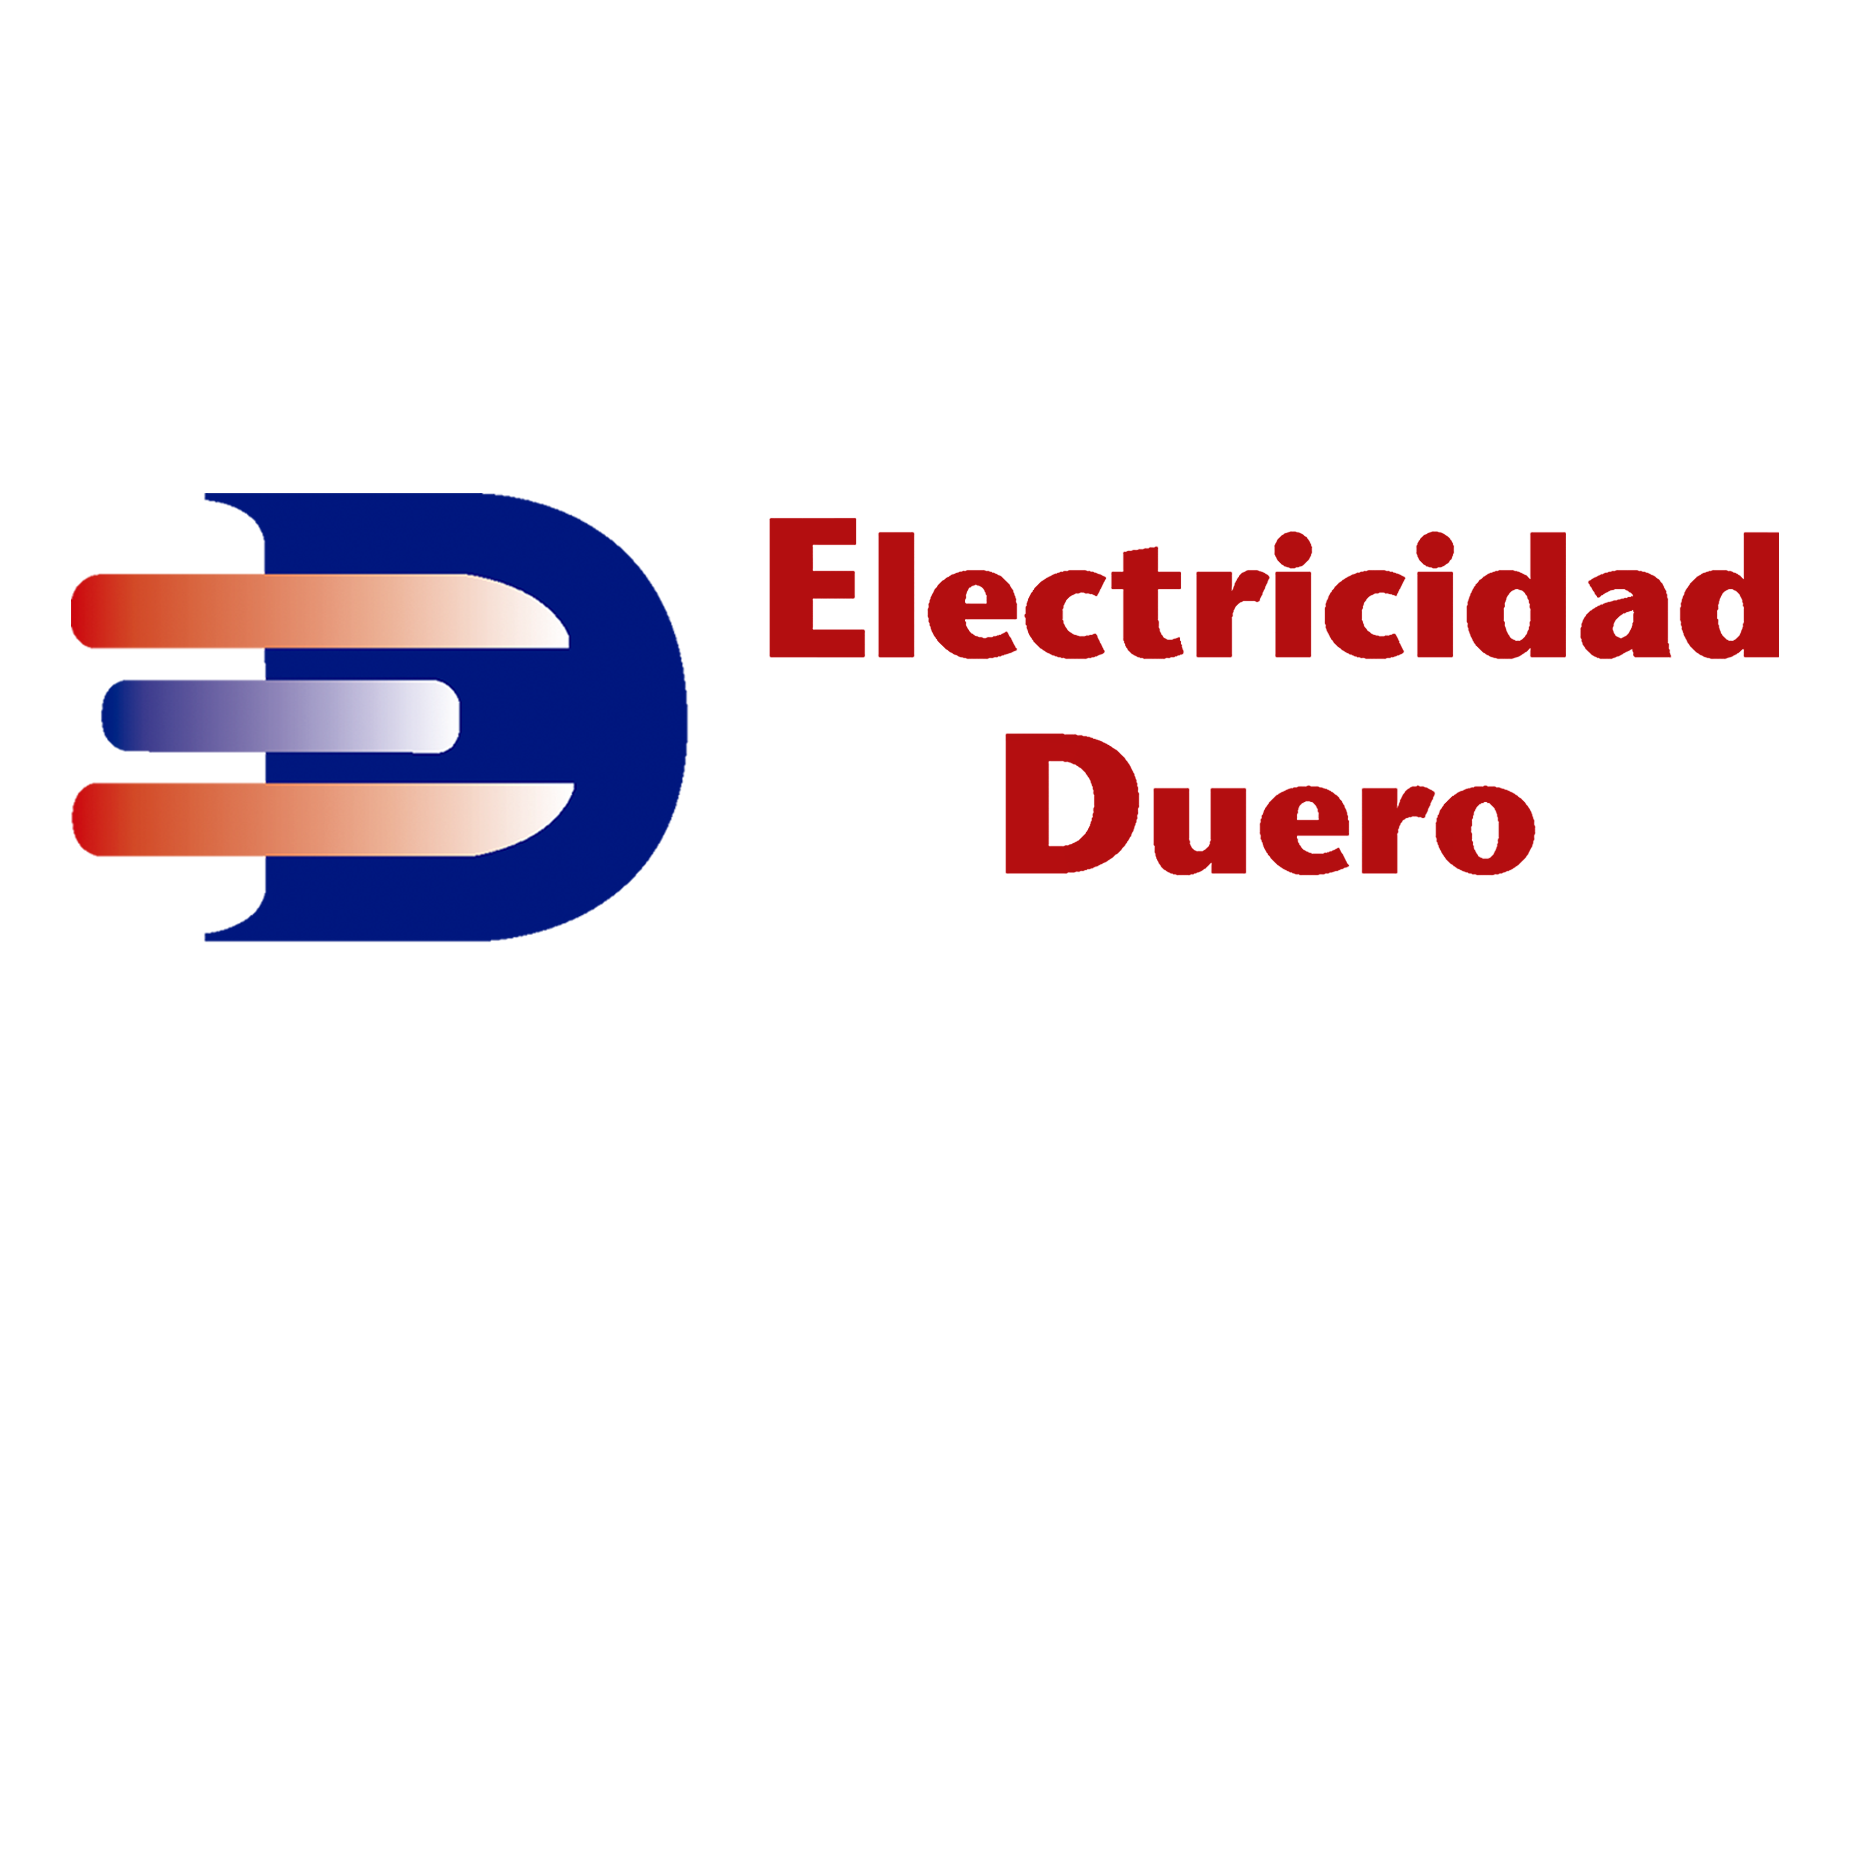 Electricidad Duero Logo